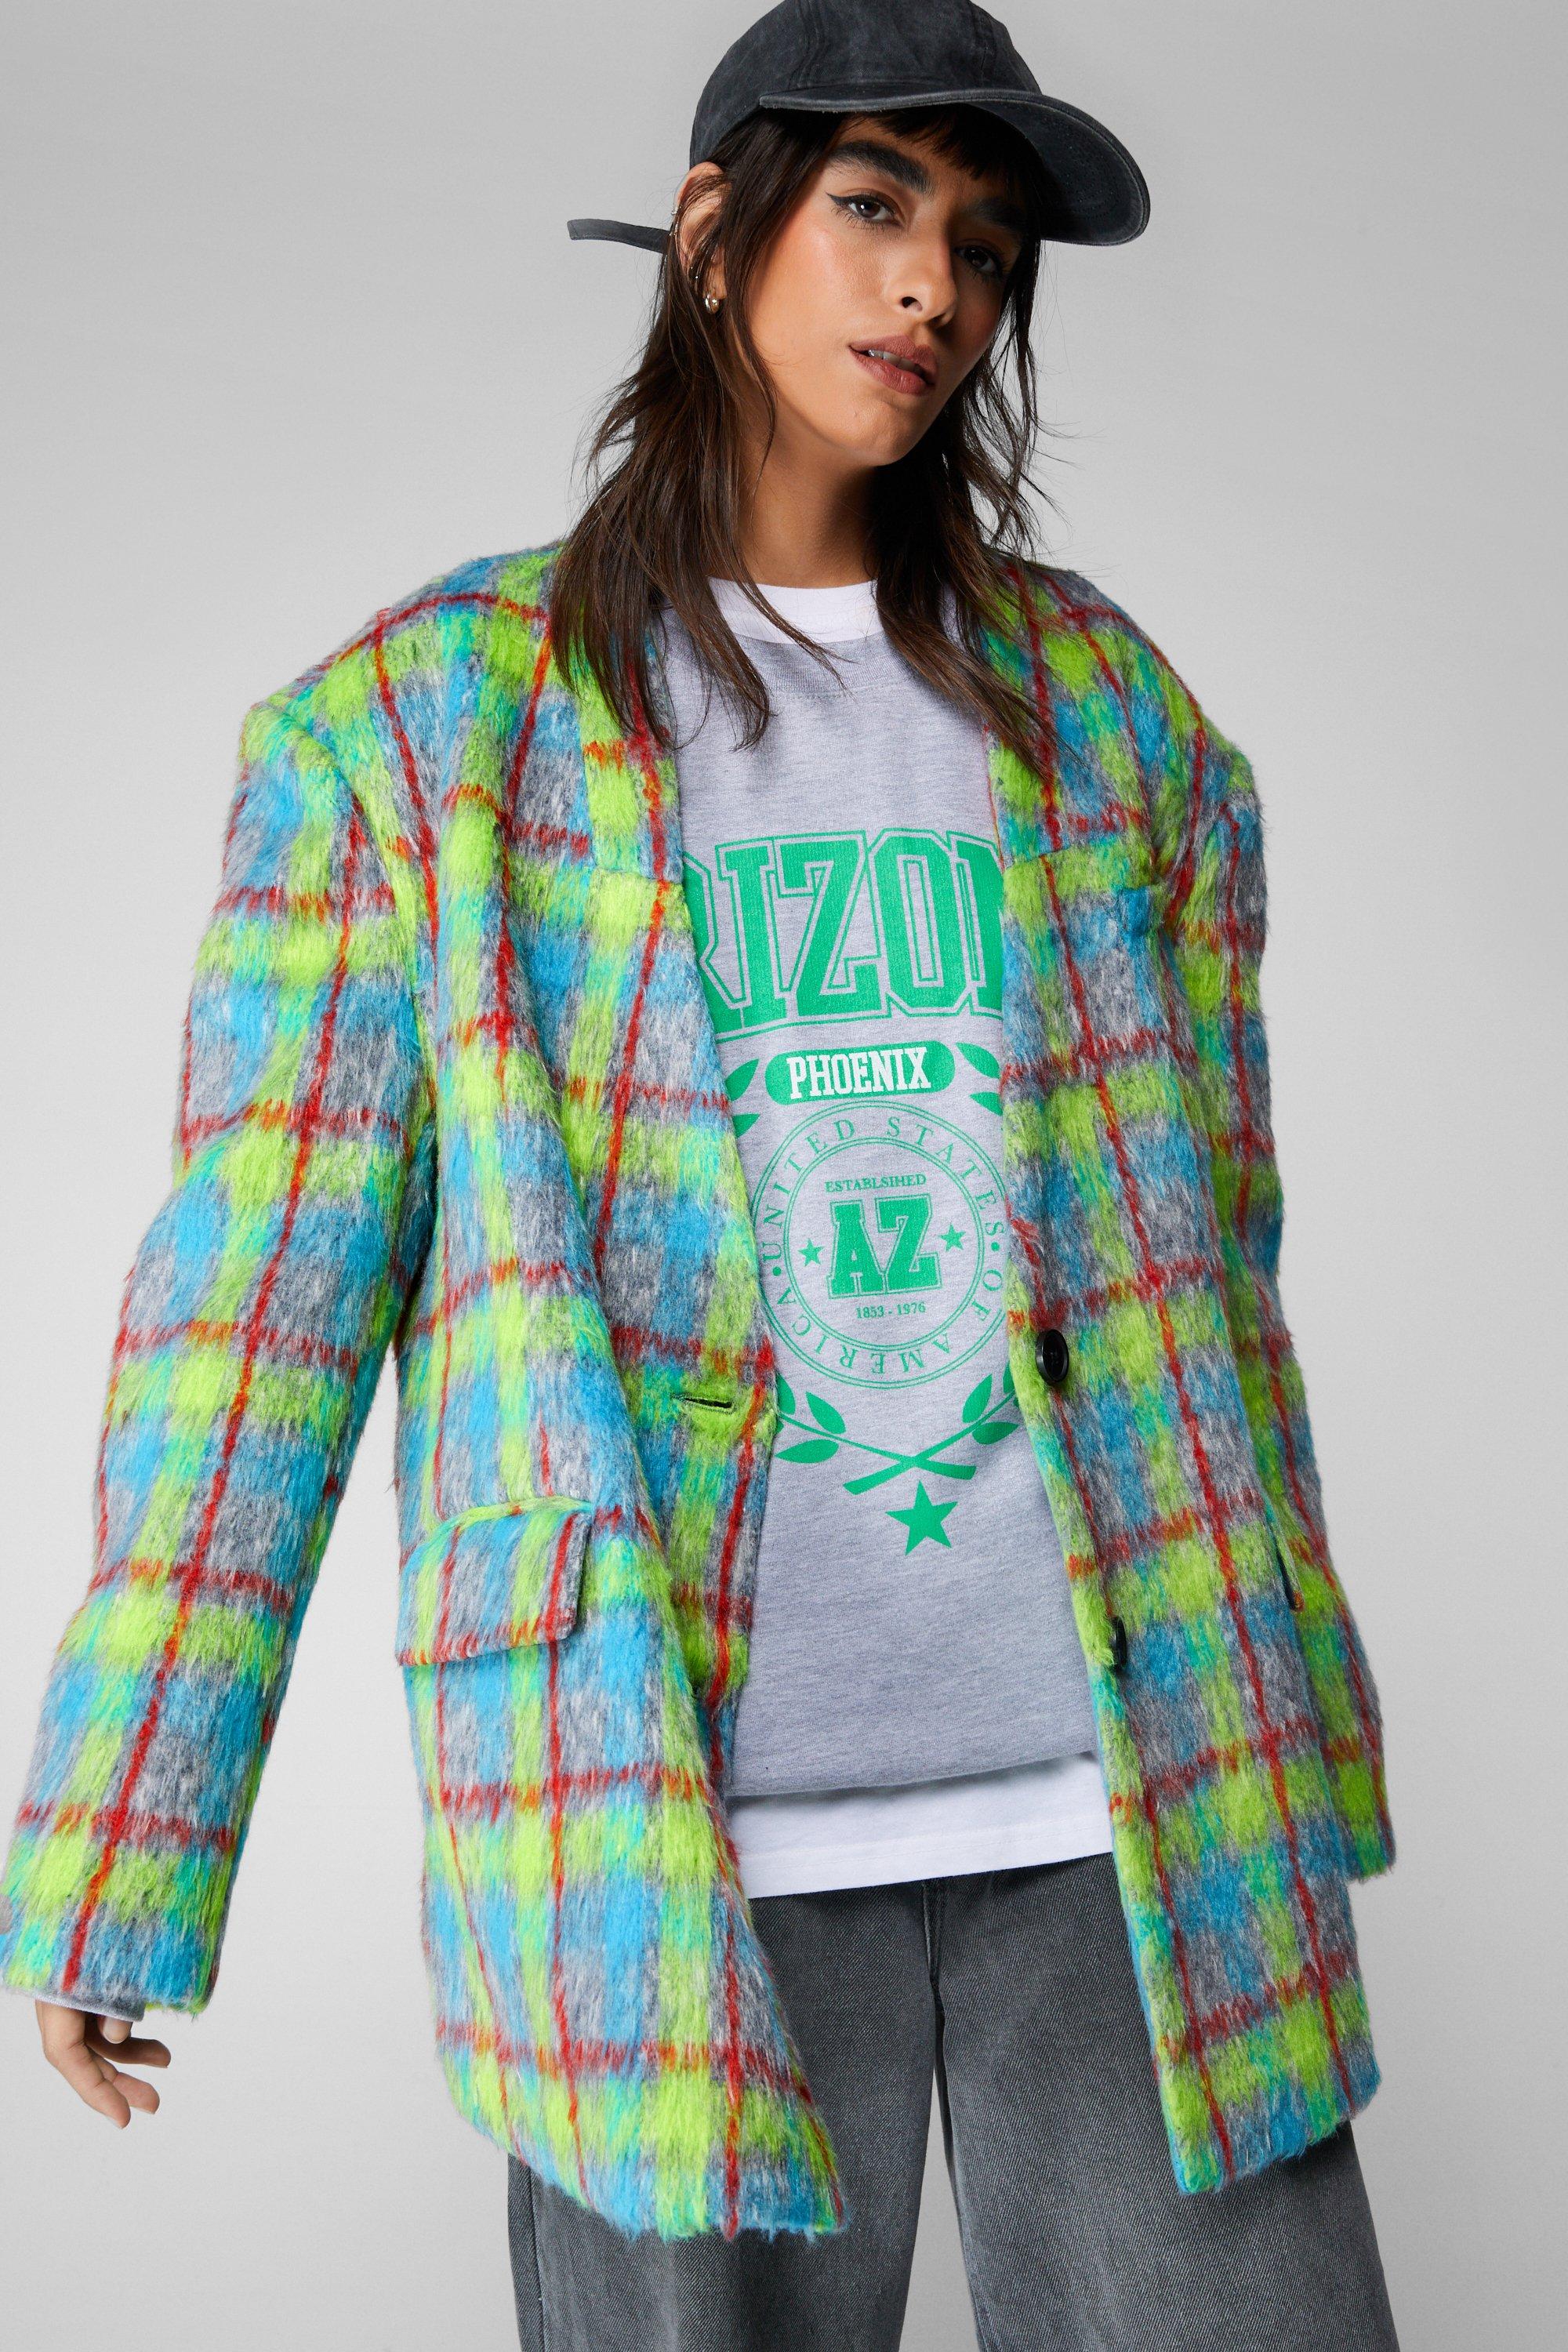 Классический пиджак в неоновую клетку премиум-класса Nasty Gal, цвет neon классический пиджак премиум класса с жемчужной отделкой nasty gal белый